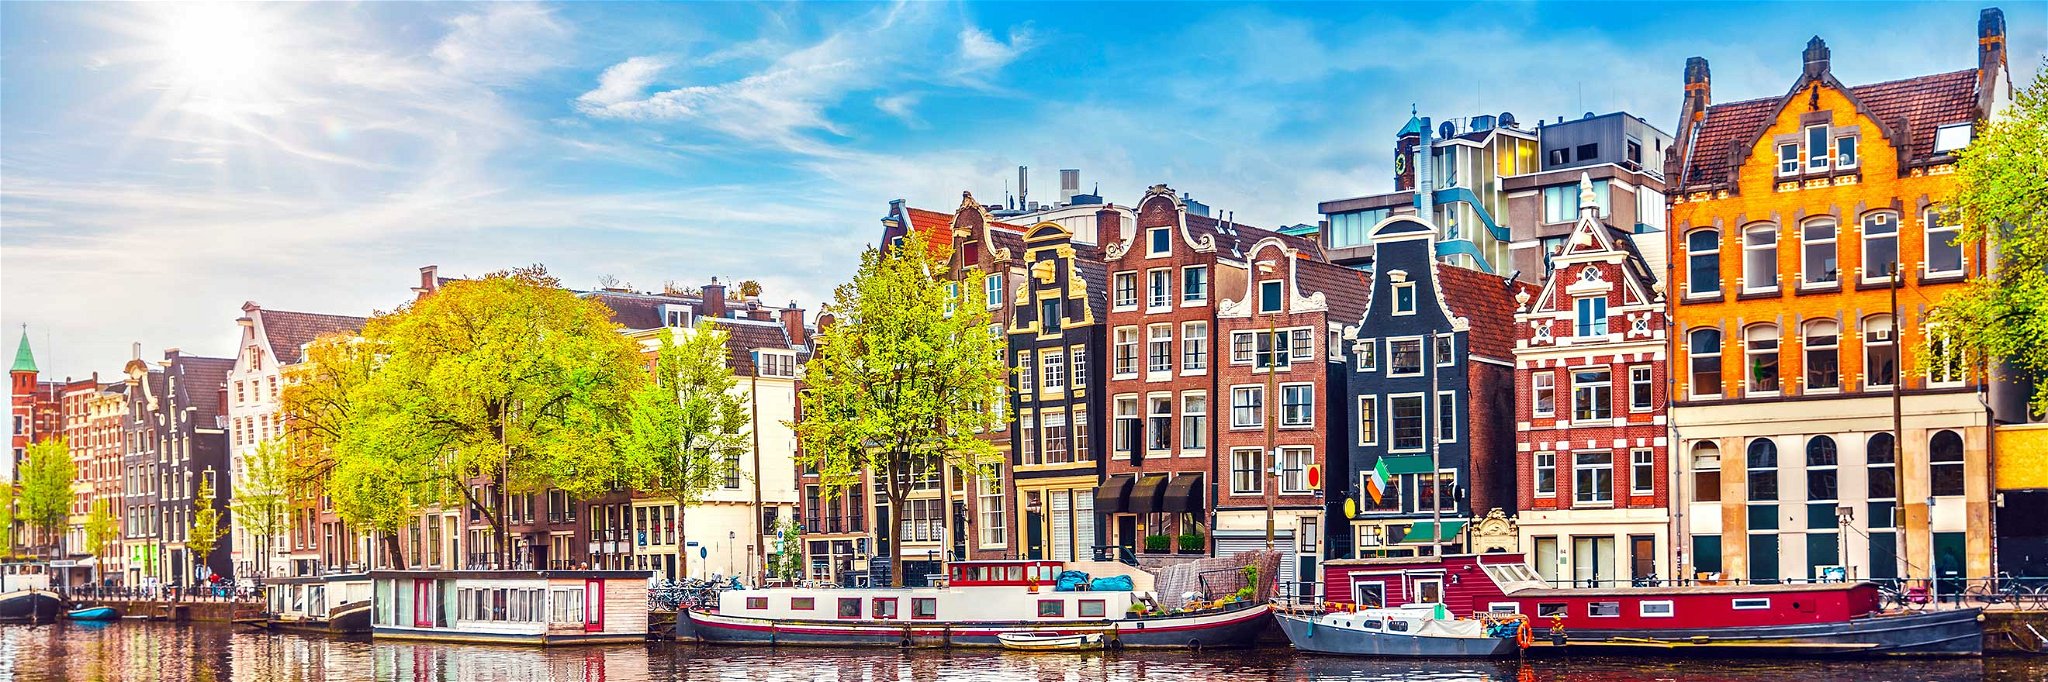 Österreicher urlauben immer lieber in Städten, zum Beispiel in Amsterdam.